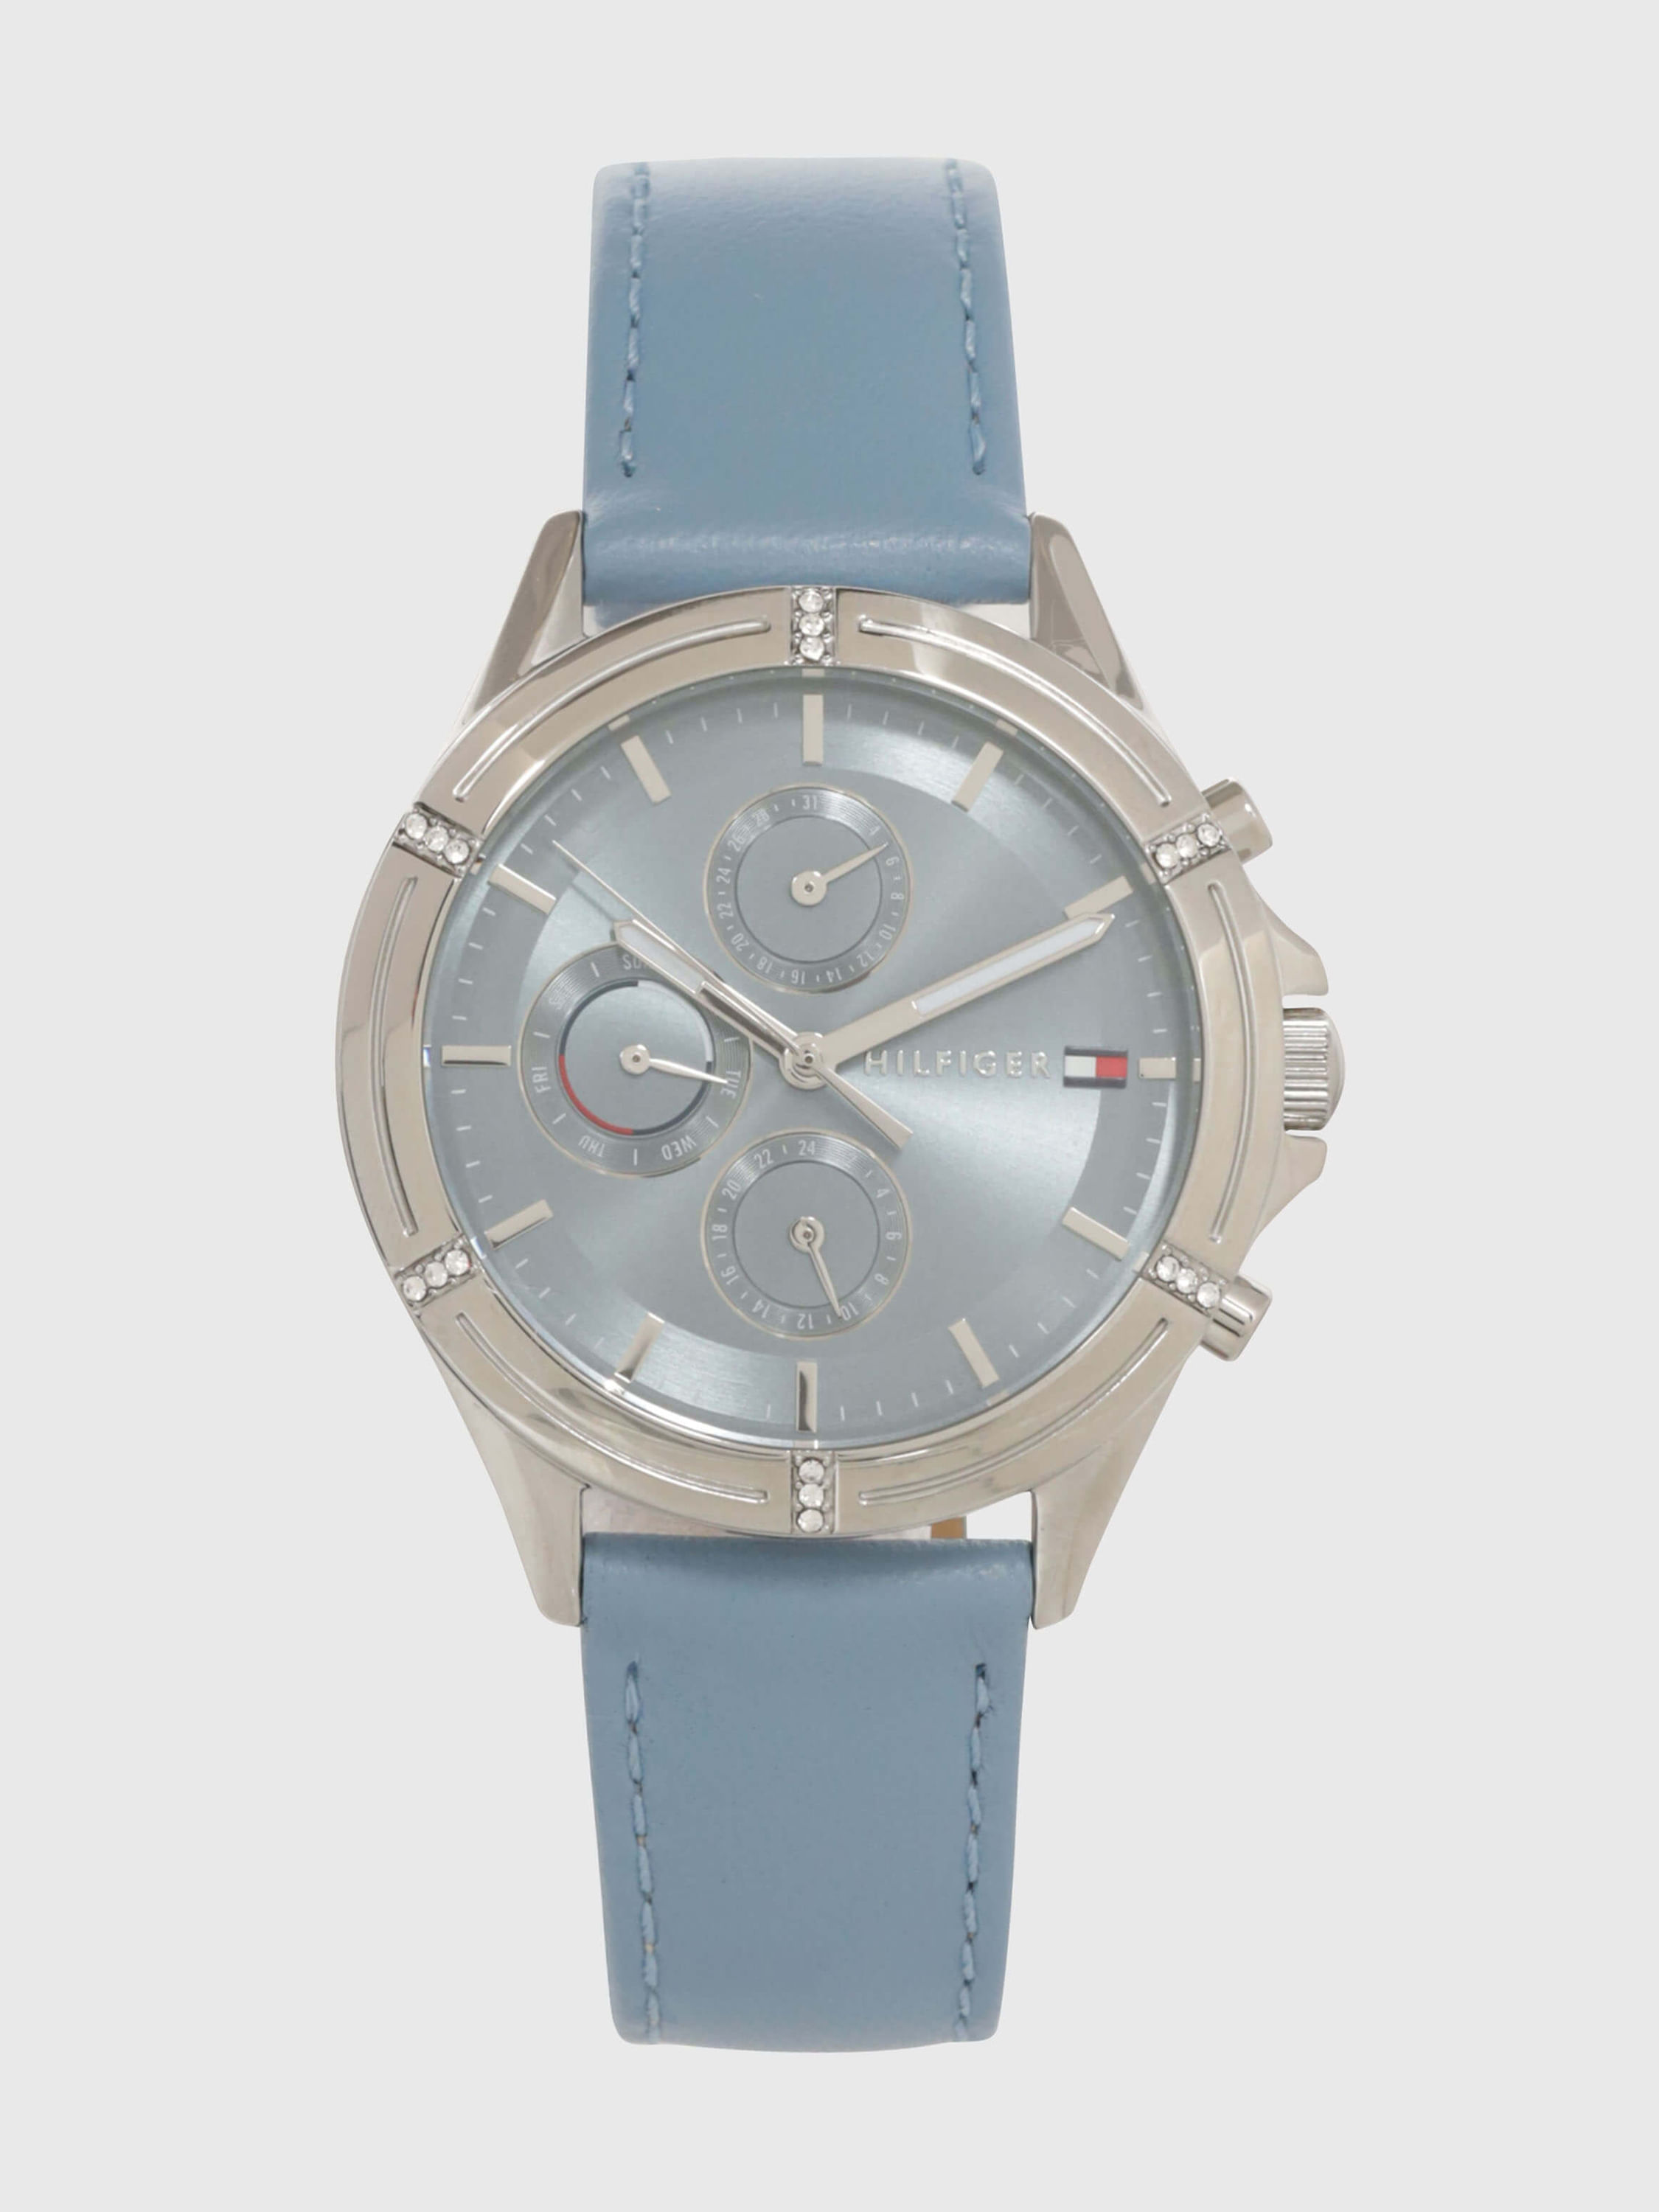 Reloj de pulso Tommy Hilfiger dama M1782385 - Relojes en México -  TiempoMania